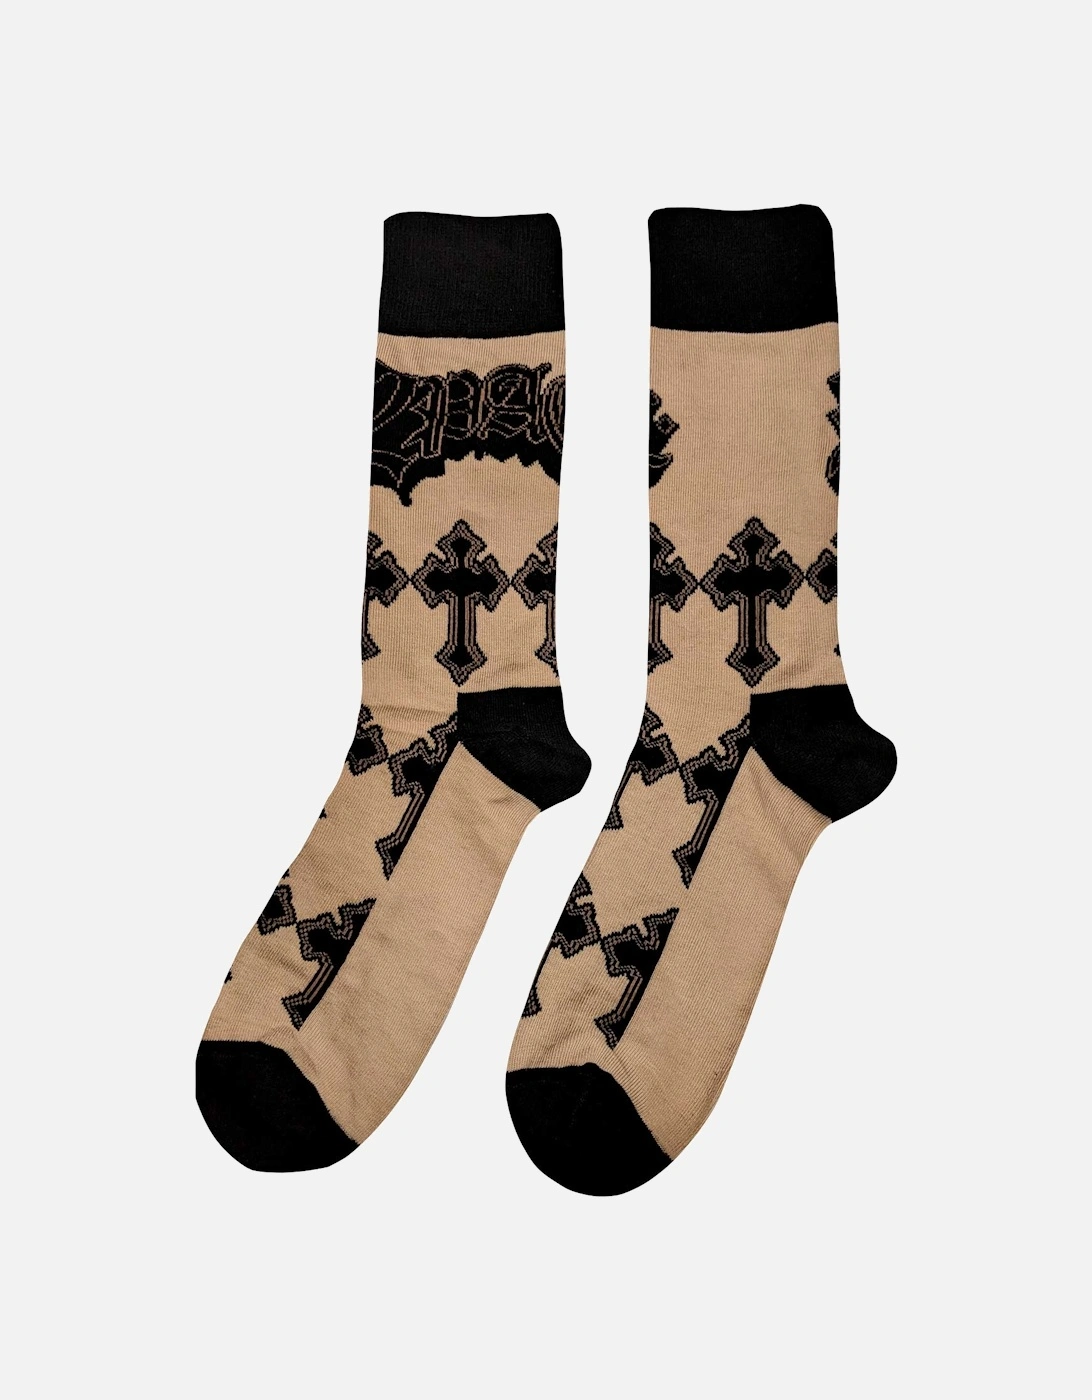 Unisex Adult Cross Ankle Socks